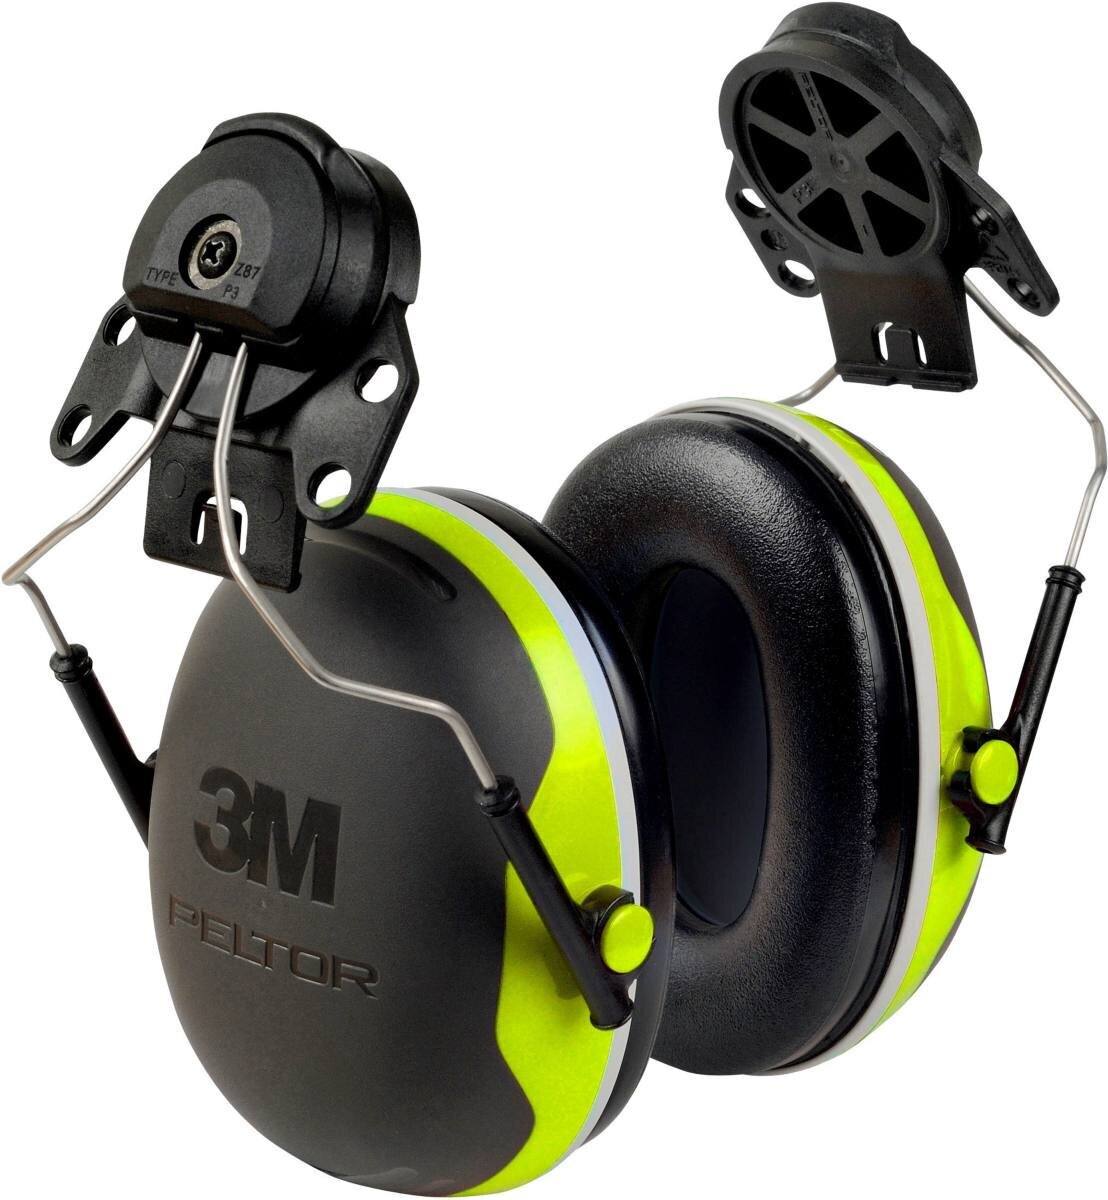 3M PELTOR Casque antibruit, X4P3E fixation sur casque, fluo, jaune, SNR=32 dB avec adaptateur de casque P3E (pour tous les casques 3M, sauf G2000)